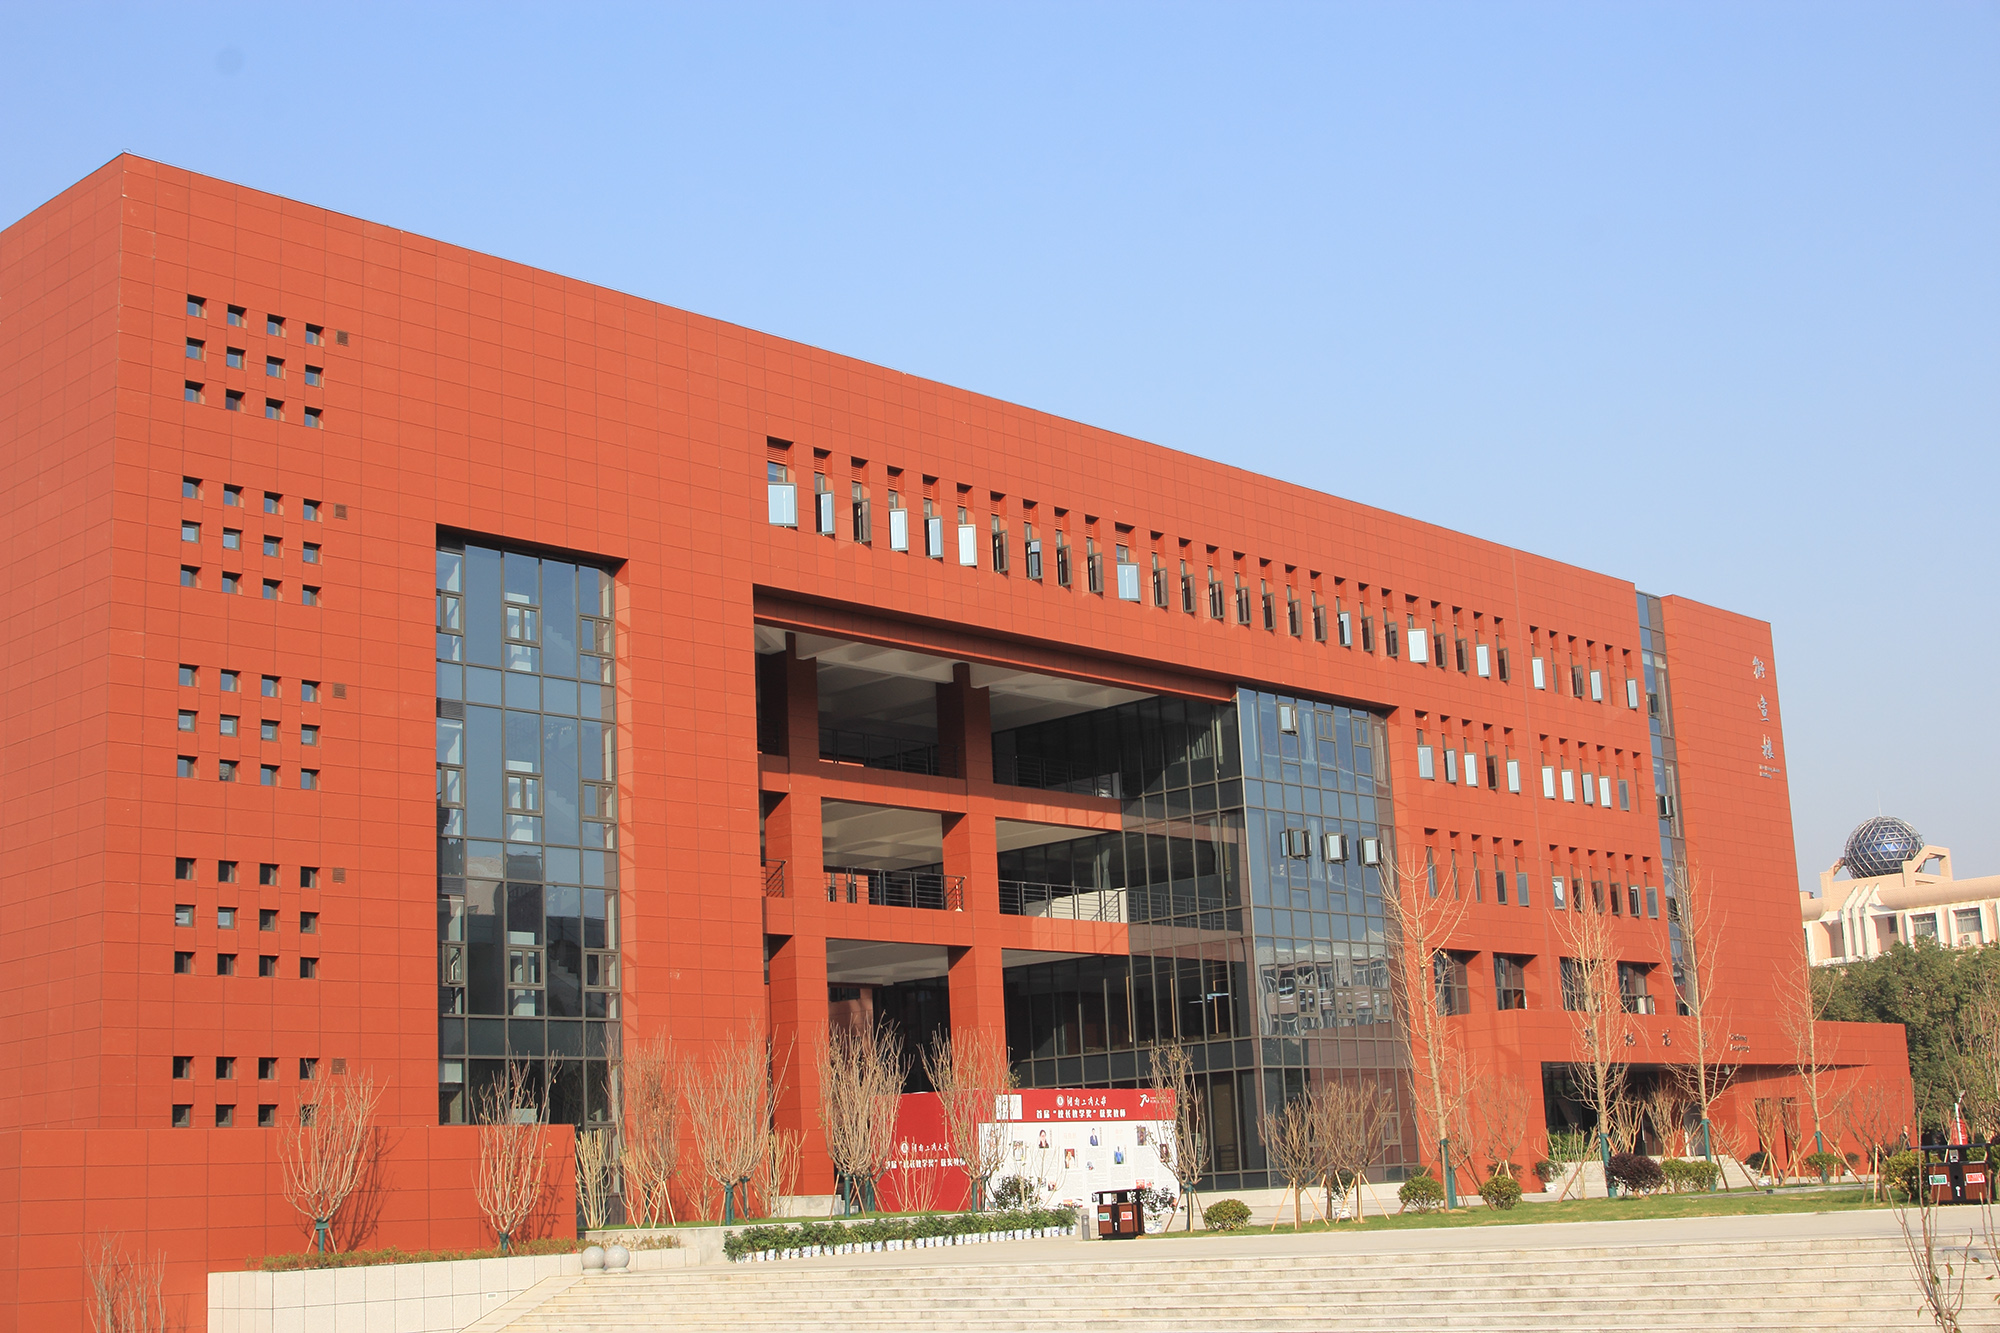 Universidade Hunan de Tecnologia e Comércio